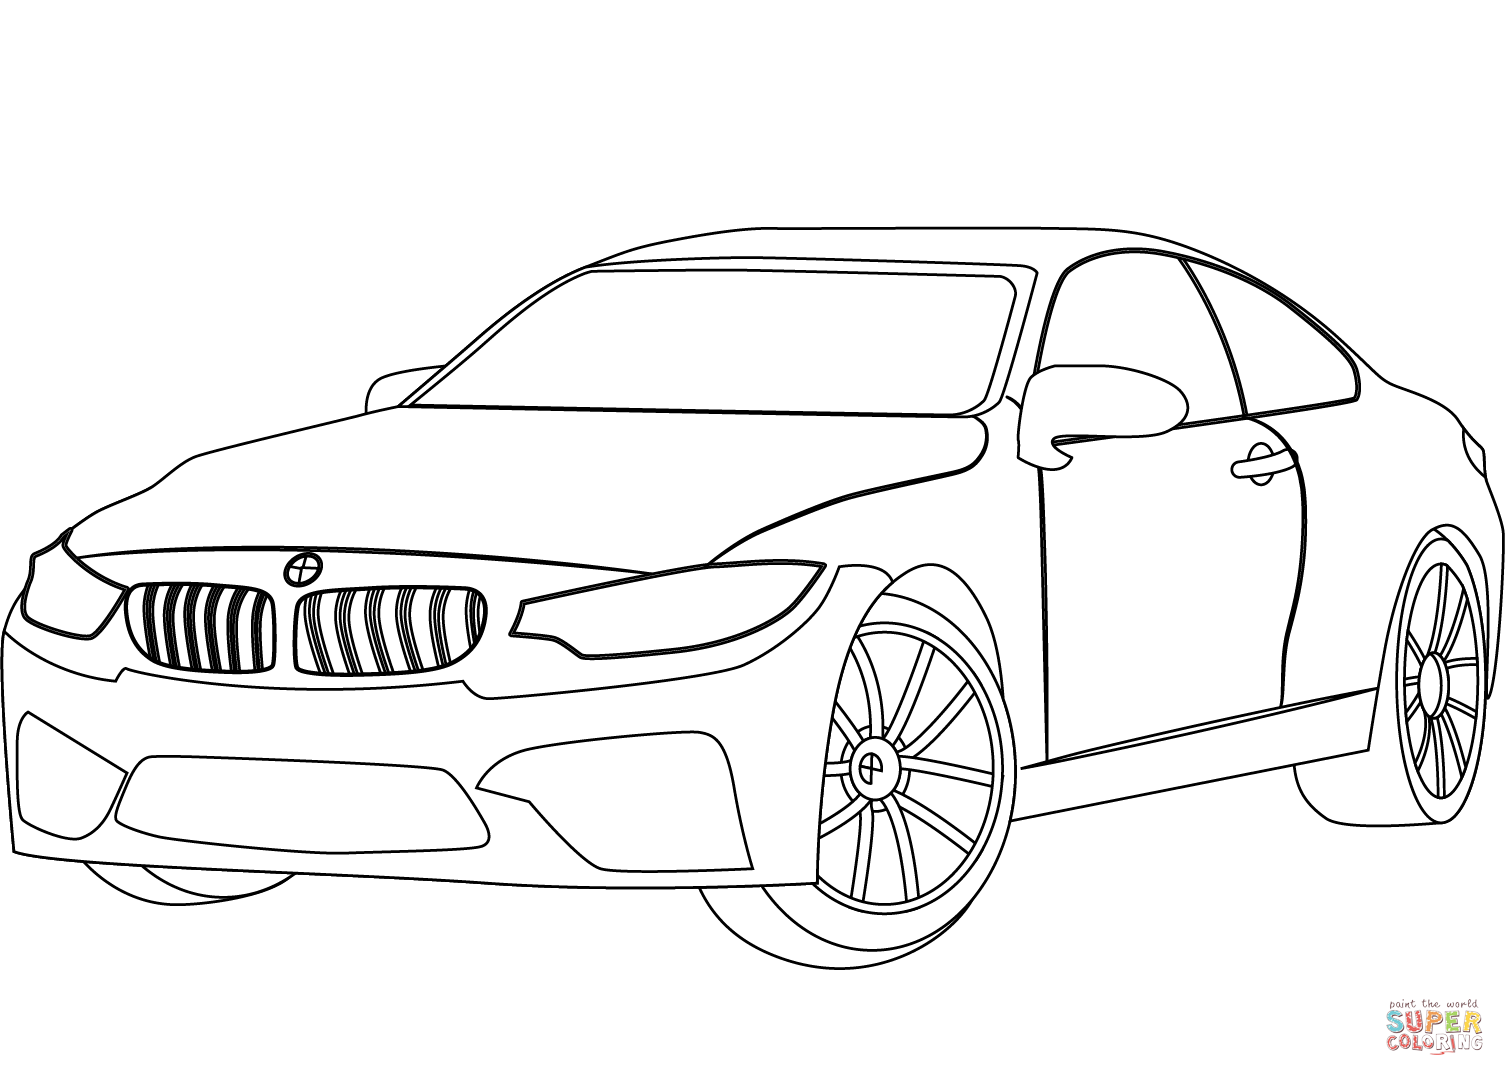 Раскраски БМВ. +70 раскрасок с машинами BMW